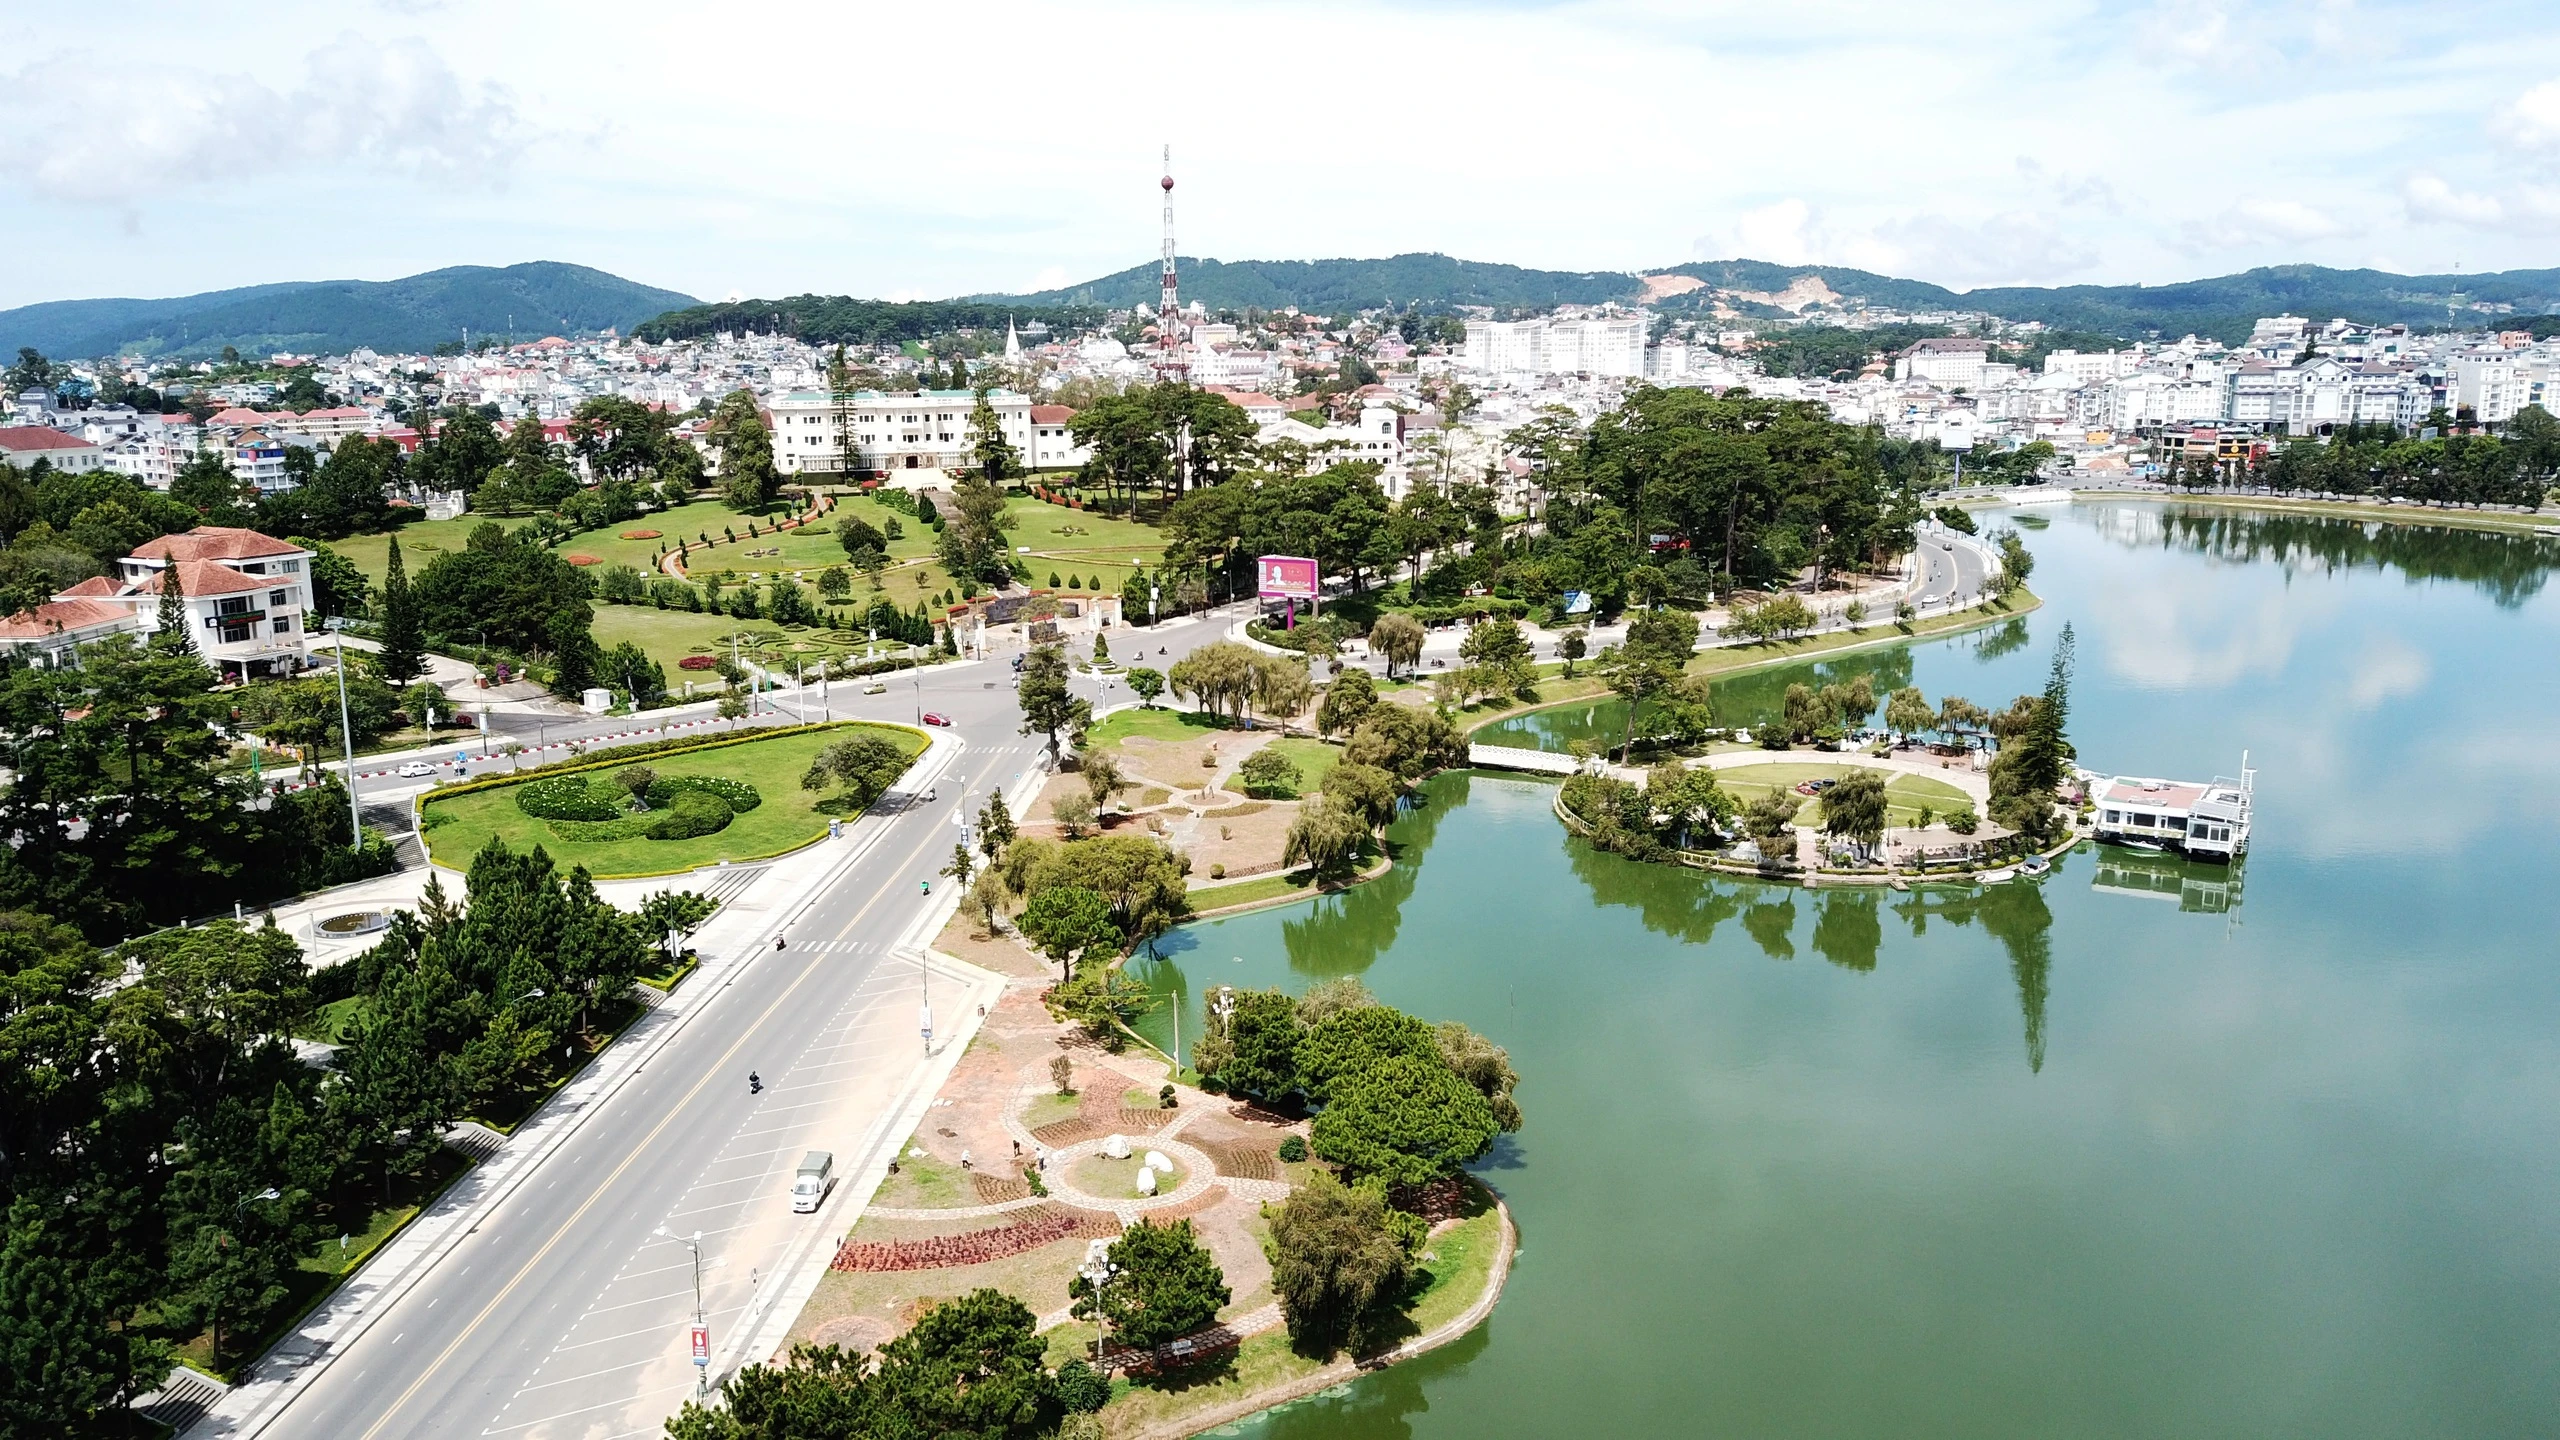 Bộ Công an yêu cầu Lâm Đồng cung cấp hồ sơ dự án cây xanh